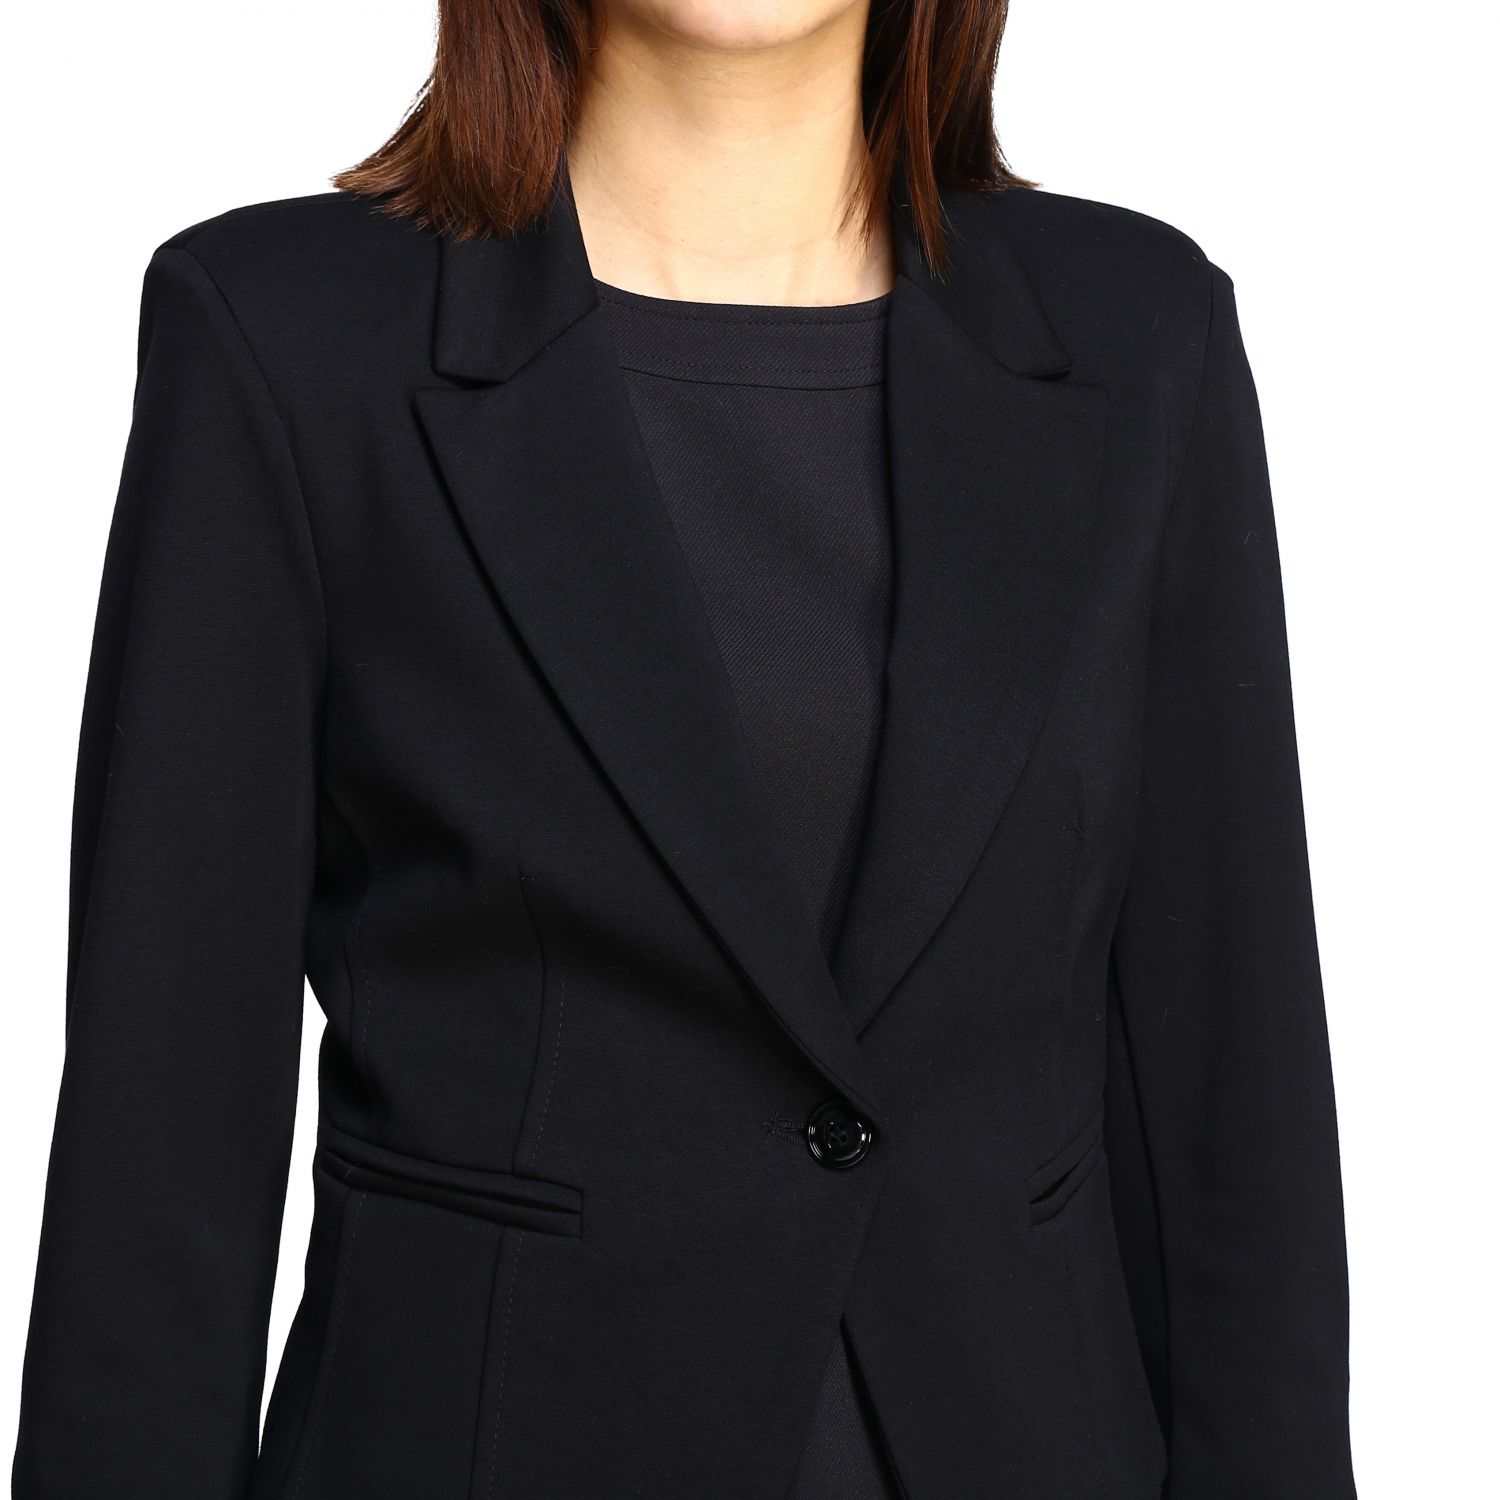 Kaos Outlet: blazer for woman - Black | Kaos blazer LI1CO016 online on